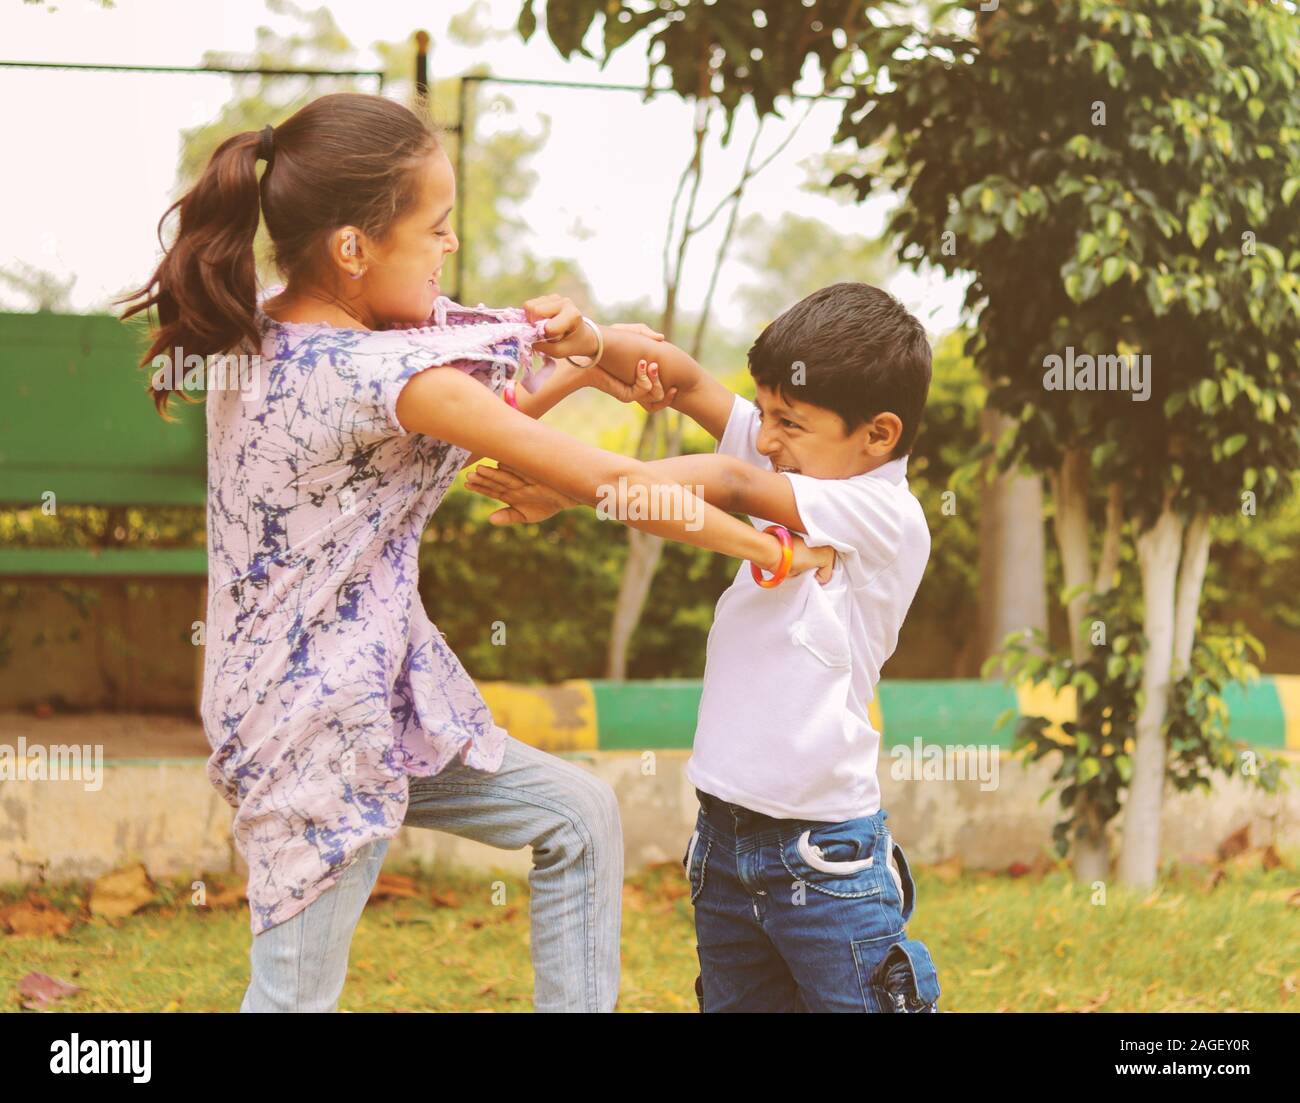 Zwei kleine Geschwister miteinander im Park kämpfen - Kinder schlagen und ziehen Kleid aufgrund von Konflikten in der Schule. Stockfoto